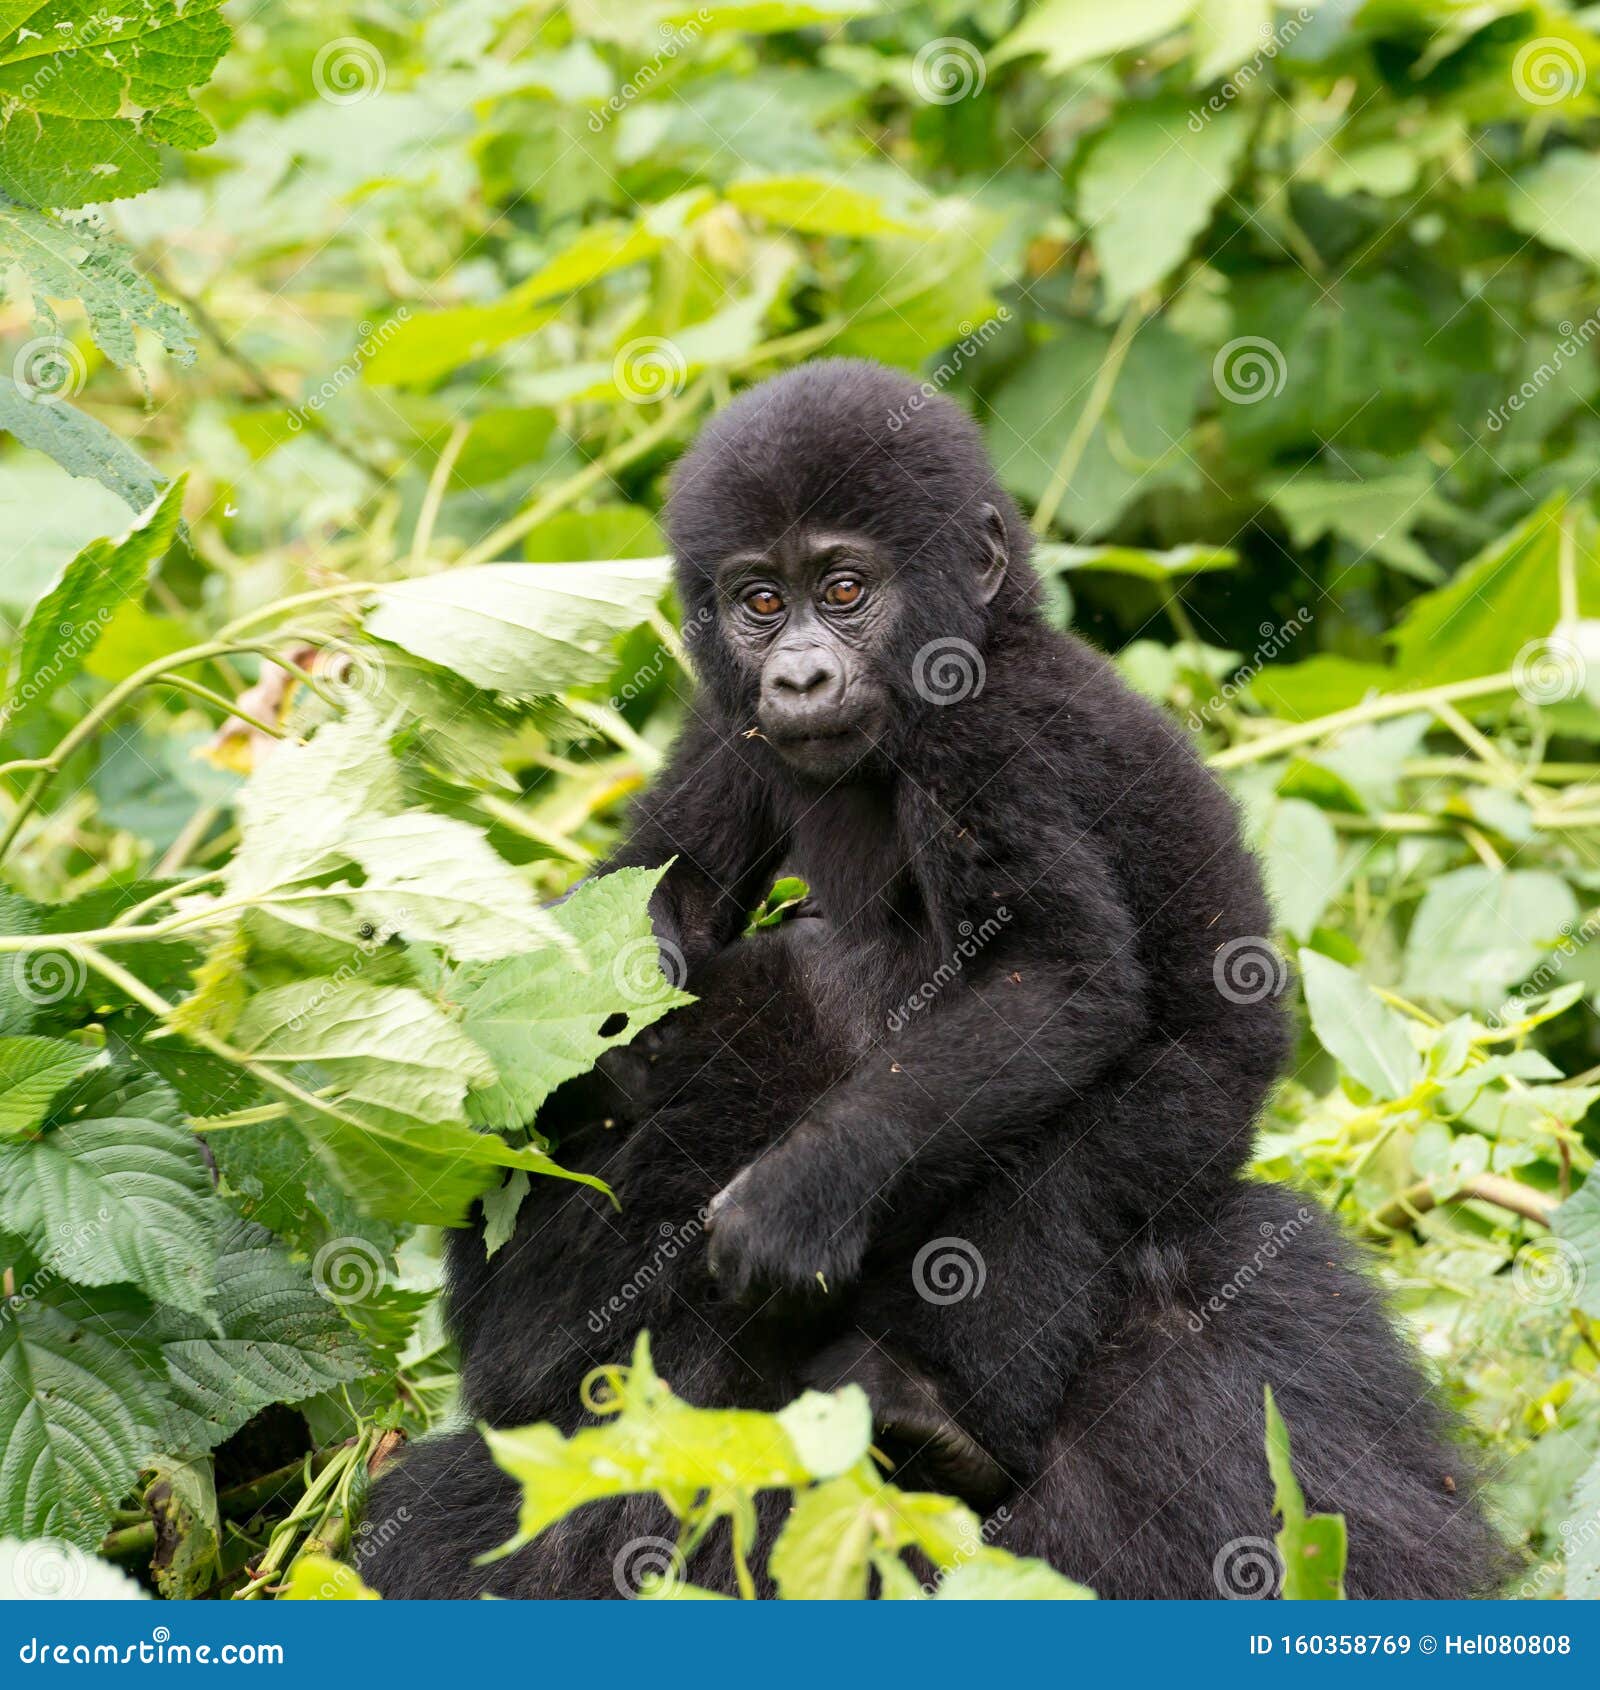 gorilla baby on mum`s back in mountain rainforest of bwindi impenetrable forest nationalpark, uganda